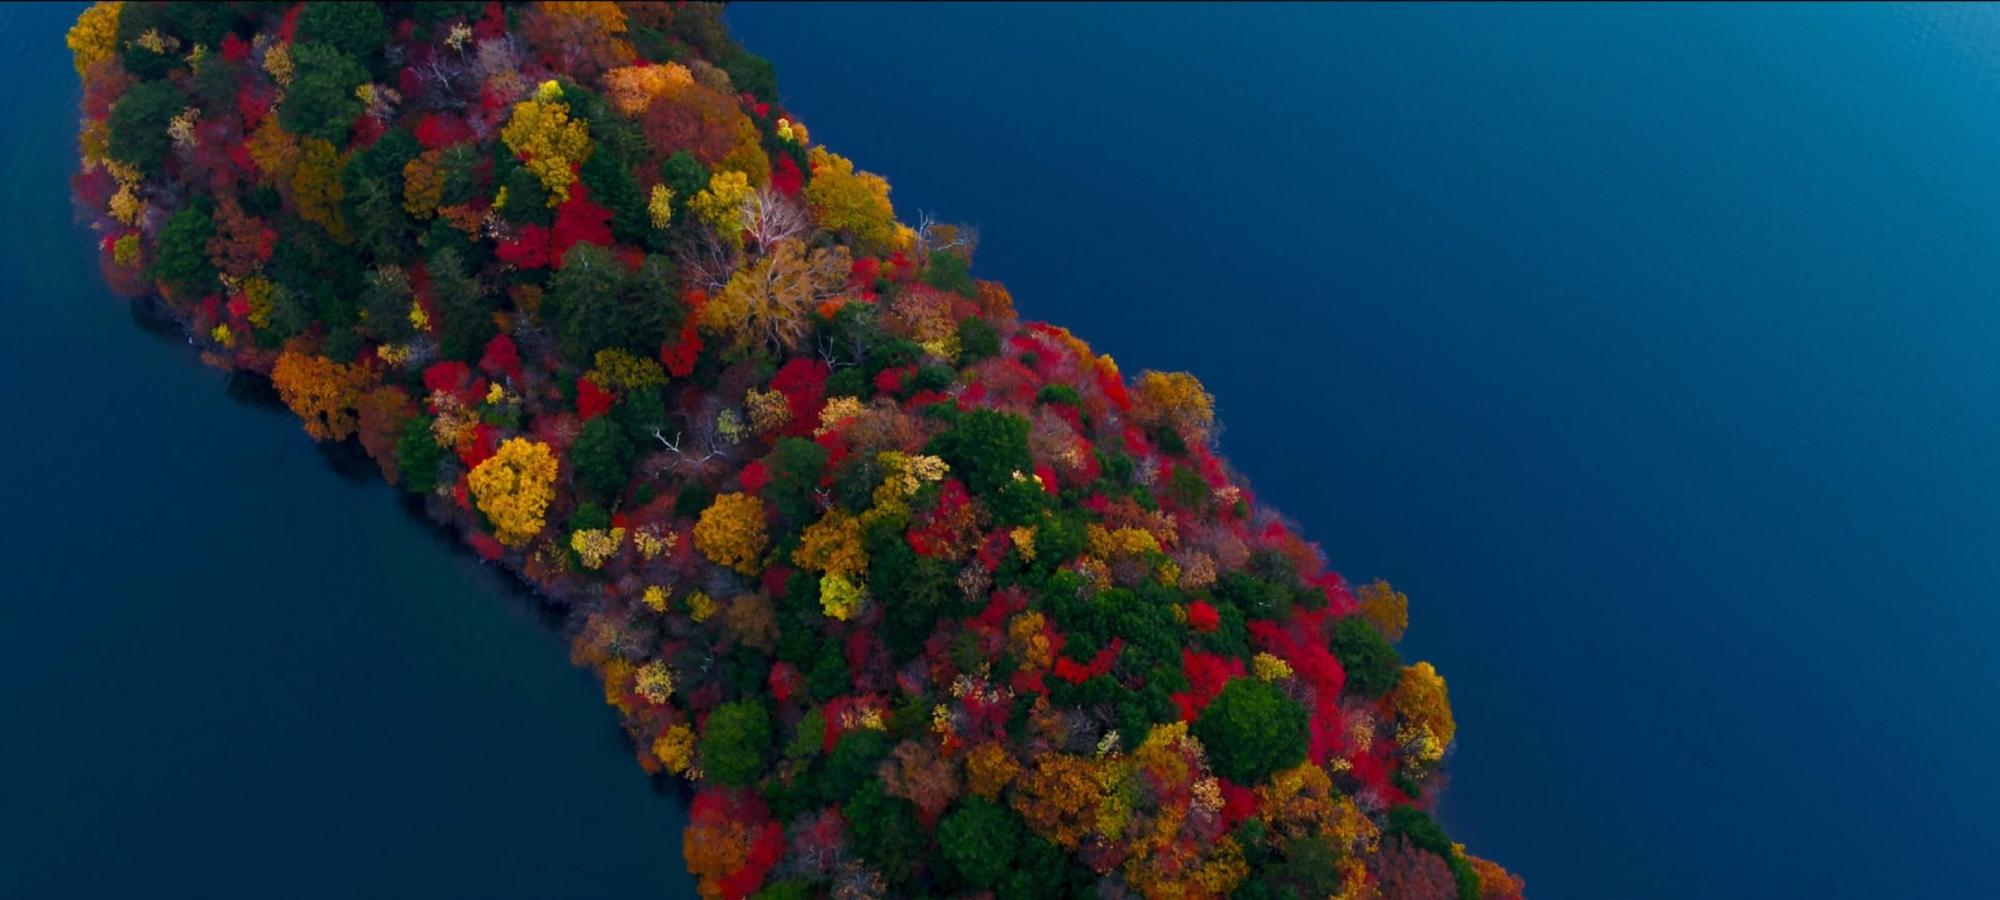 ブルーの海に浮かんでいる中央に緑の木やオレンジ、黄色、赤などに彩られた八丁出島を上空から写した写真